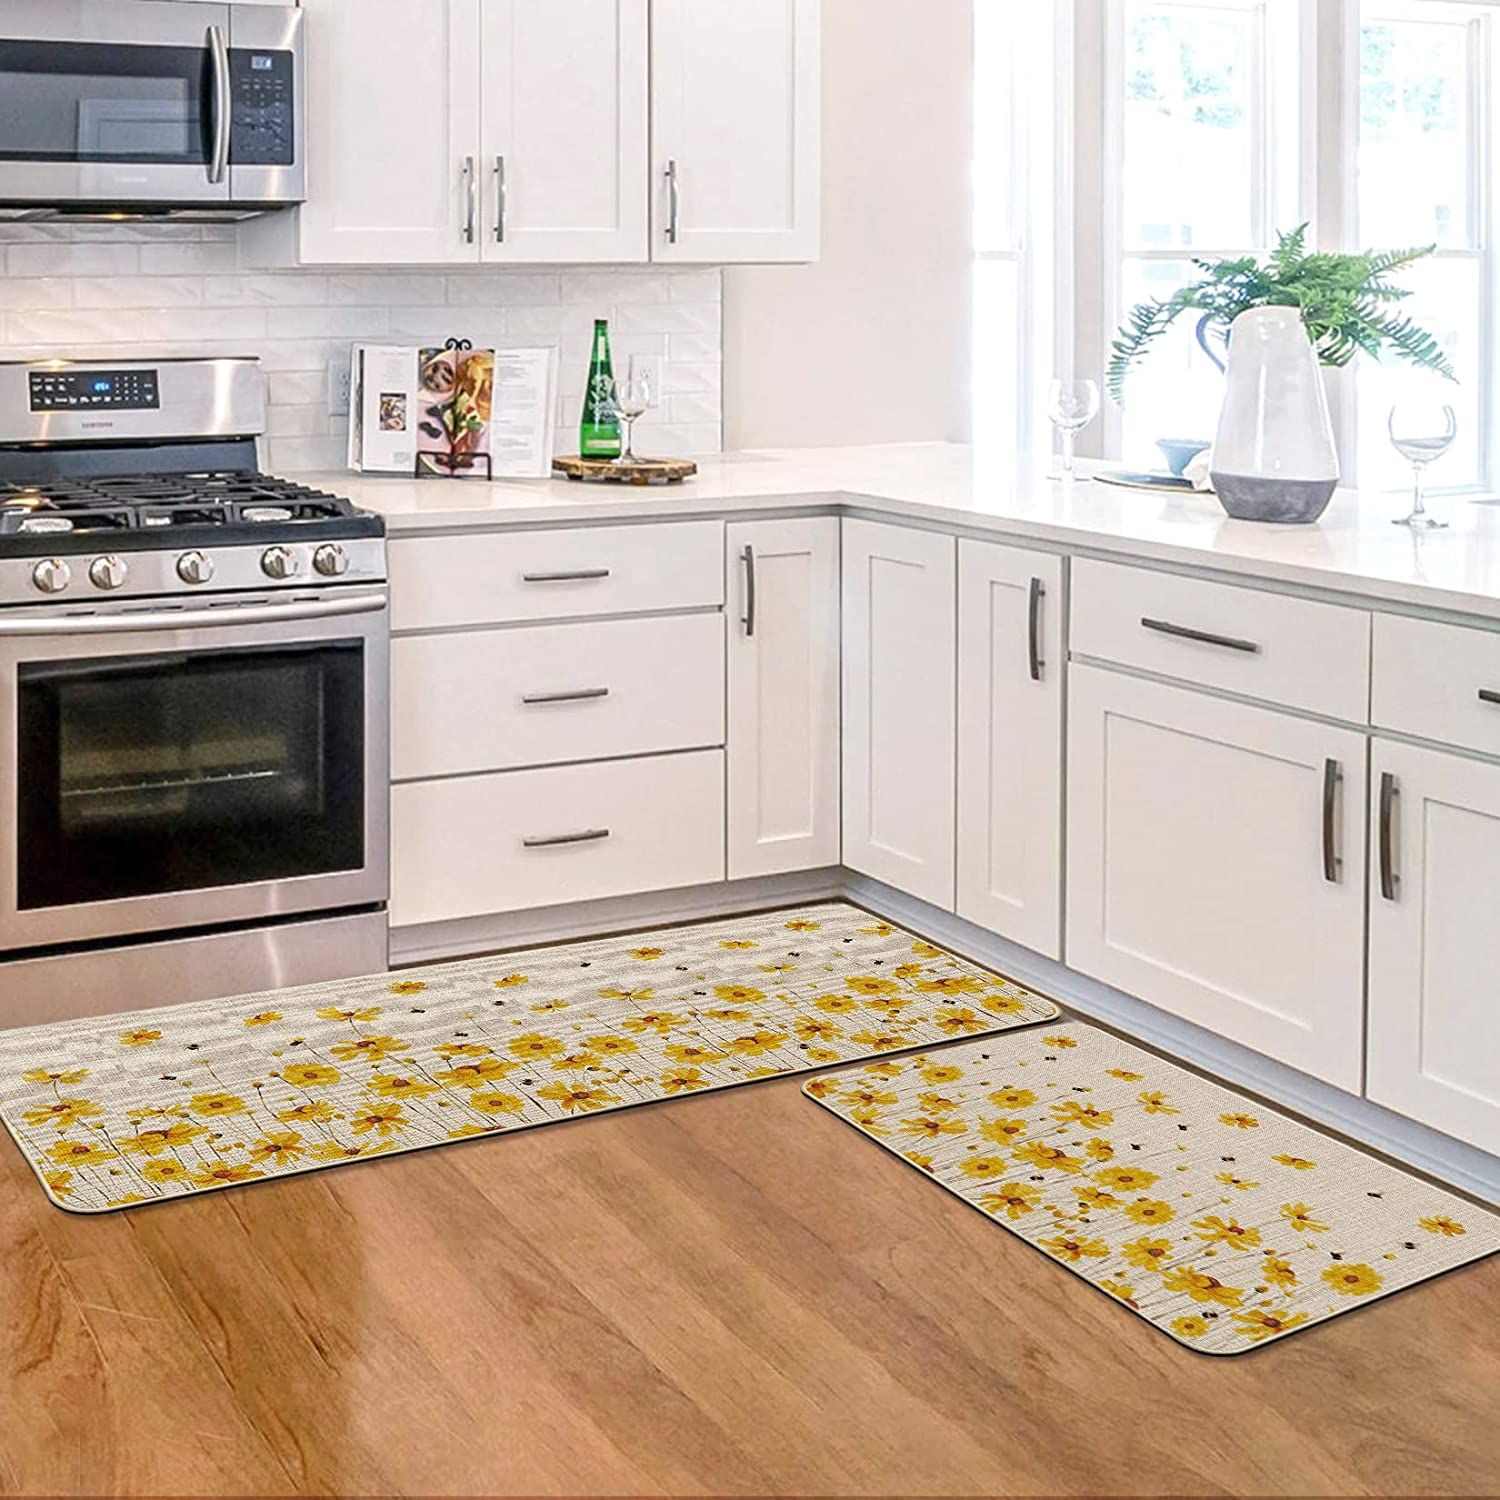  Bee Honeycomb Kitchen Rug Washable Bath Floor Mat Flower Yellow  Non-Slip Area Runner Carpet Doormat for Bathroom Living Room Bedroom 39x20  inch : Home & Kitchen